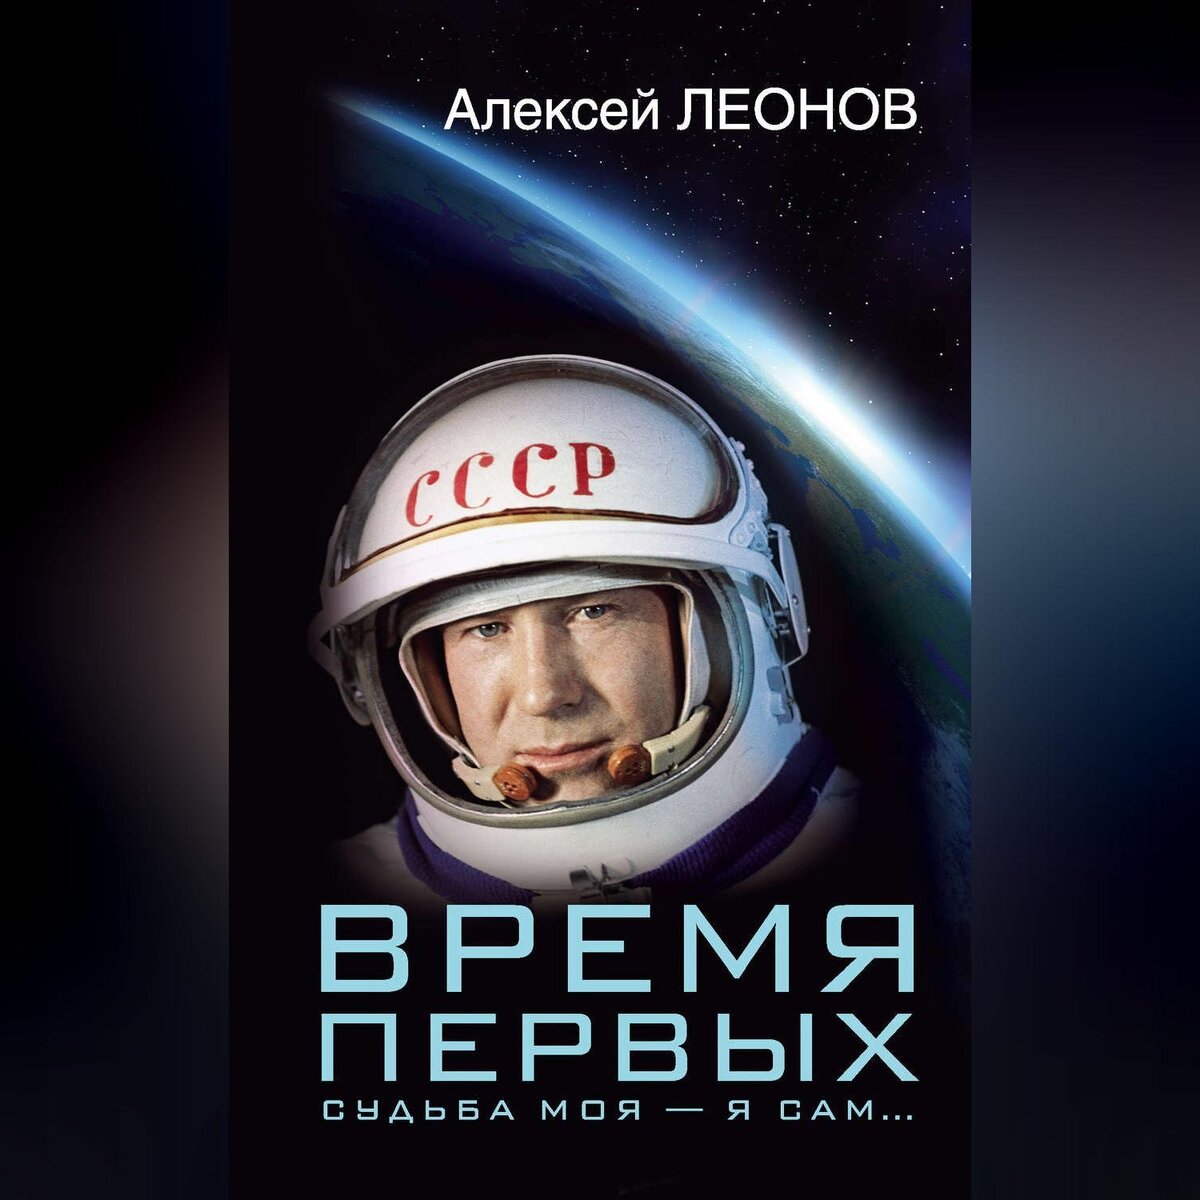 Книга первый космонавт. Книга Алексея Леонова время первых. Леонов «время первых. Судьба моя – я сам». Книги о космосе и космонавтах.